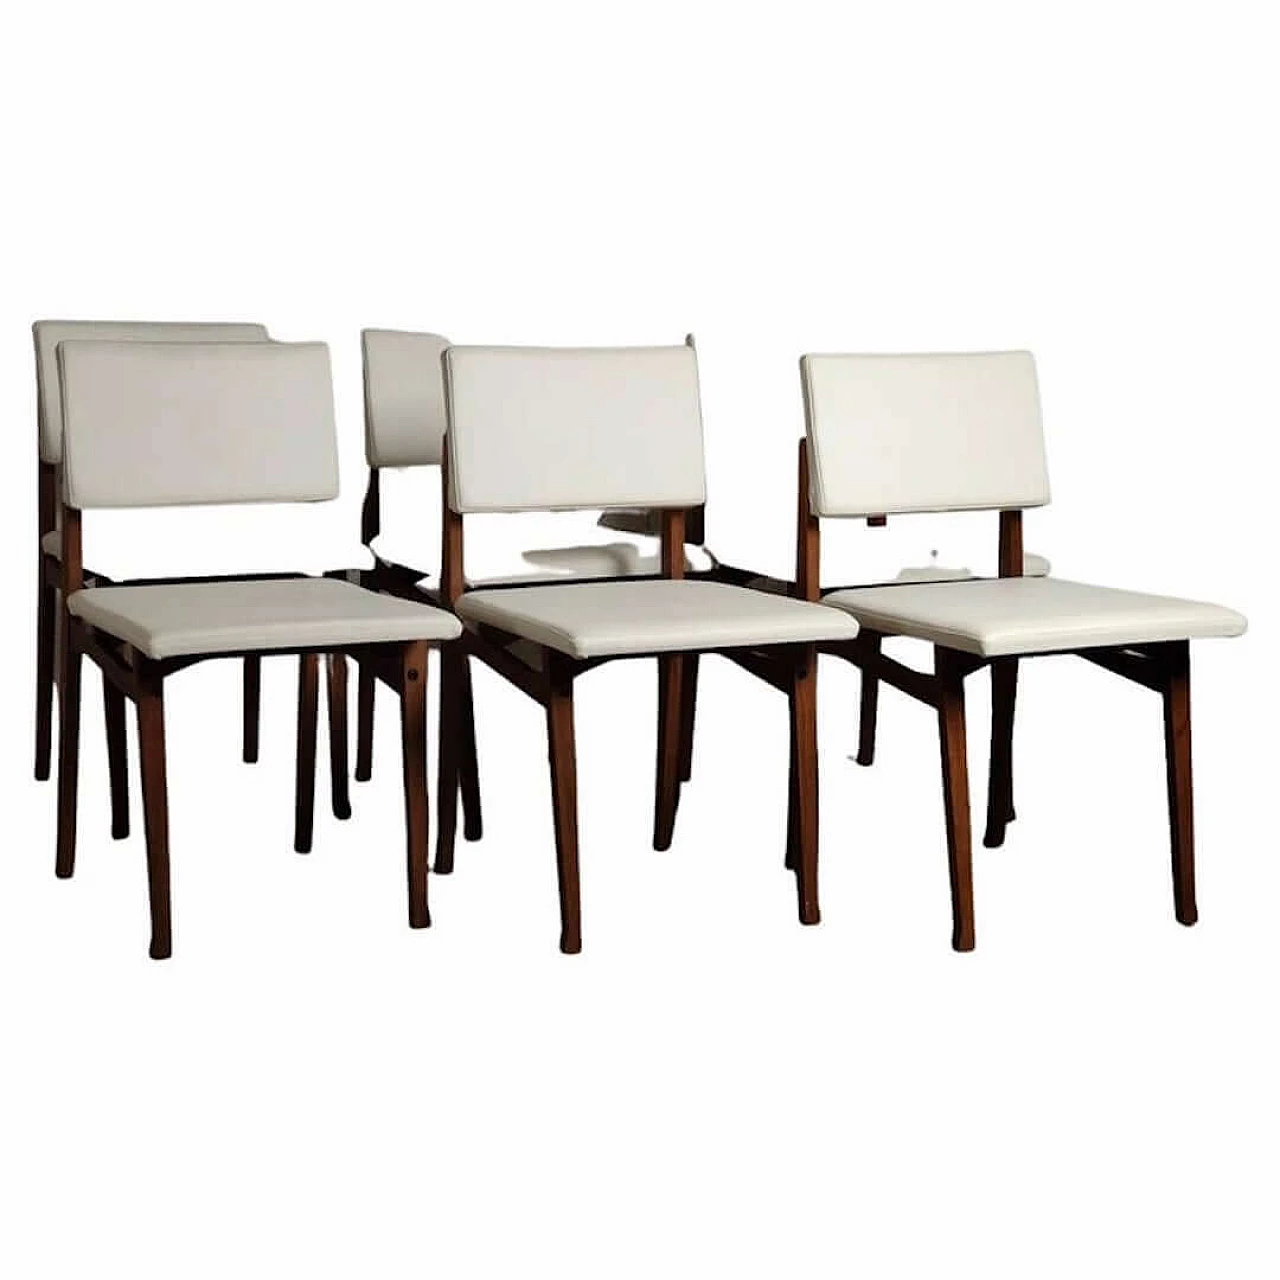 6 SD9 Luisella chairs by Franco Albini for Poggi, 1960s 1